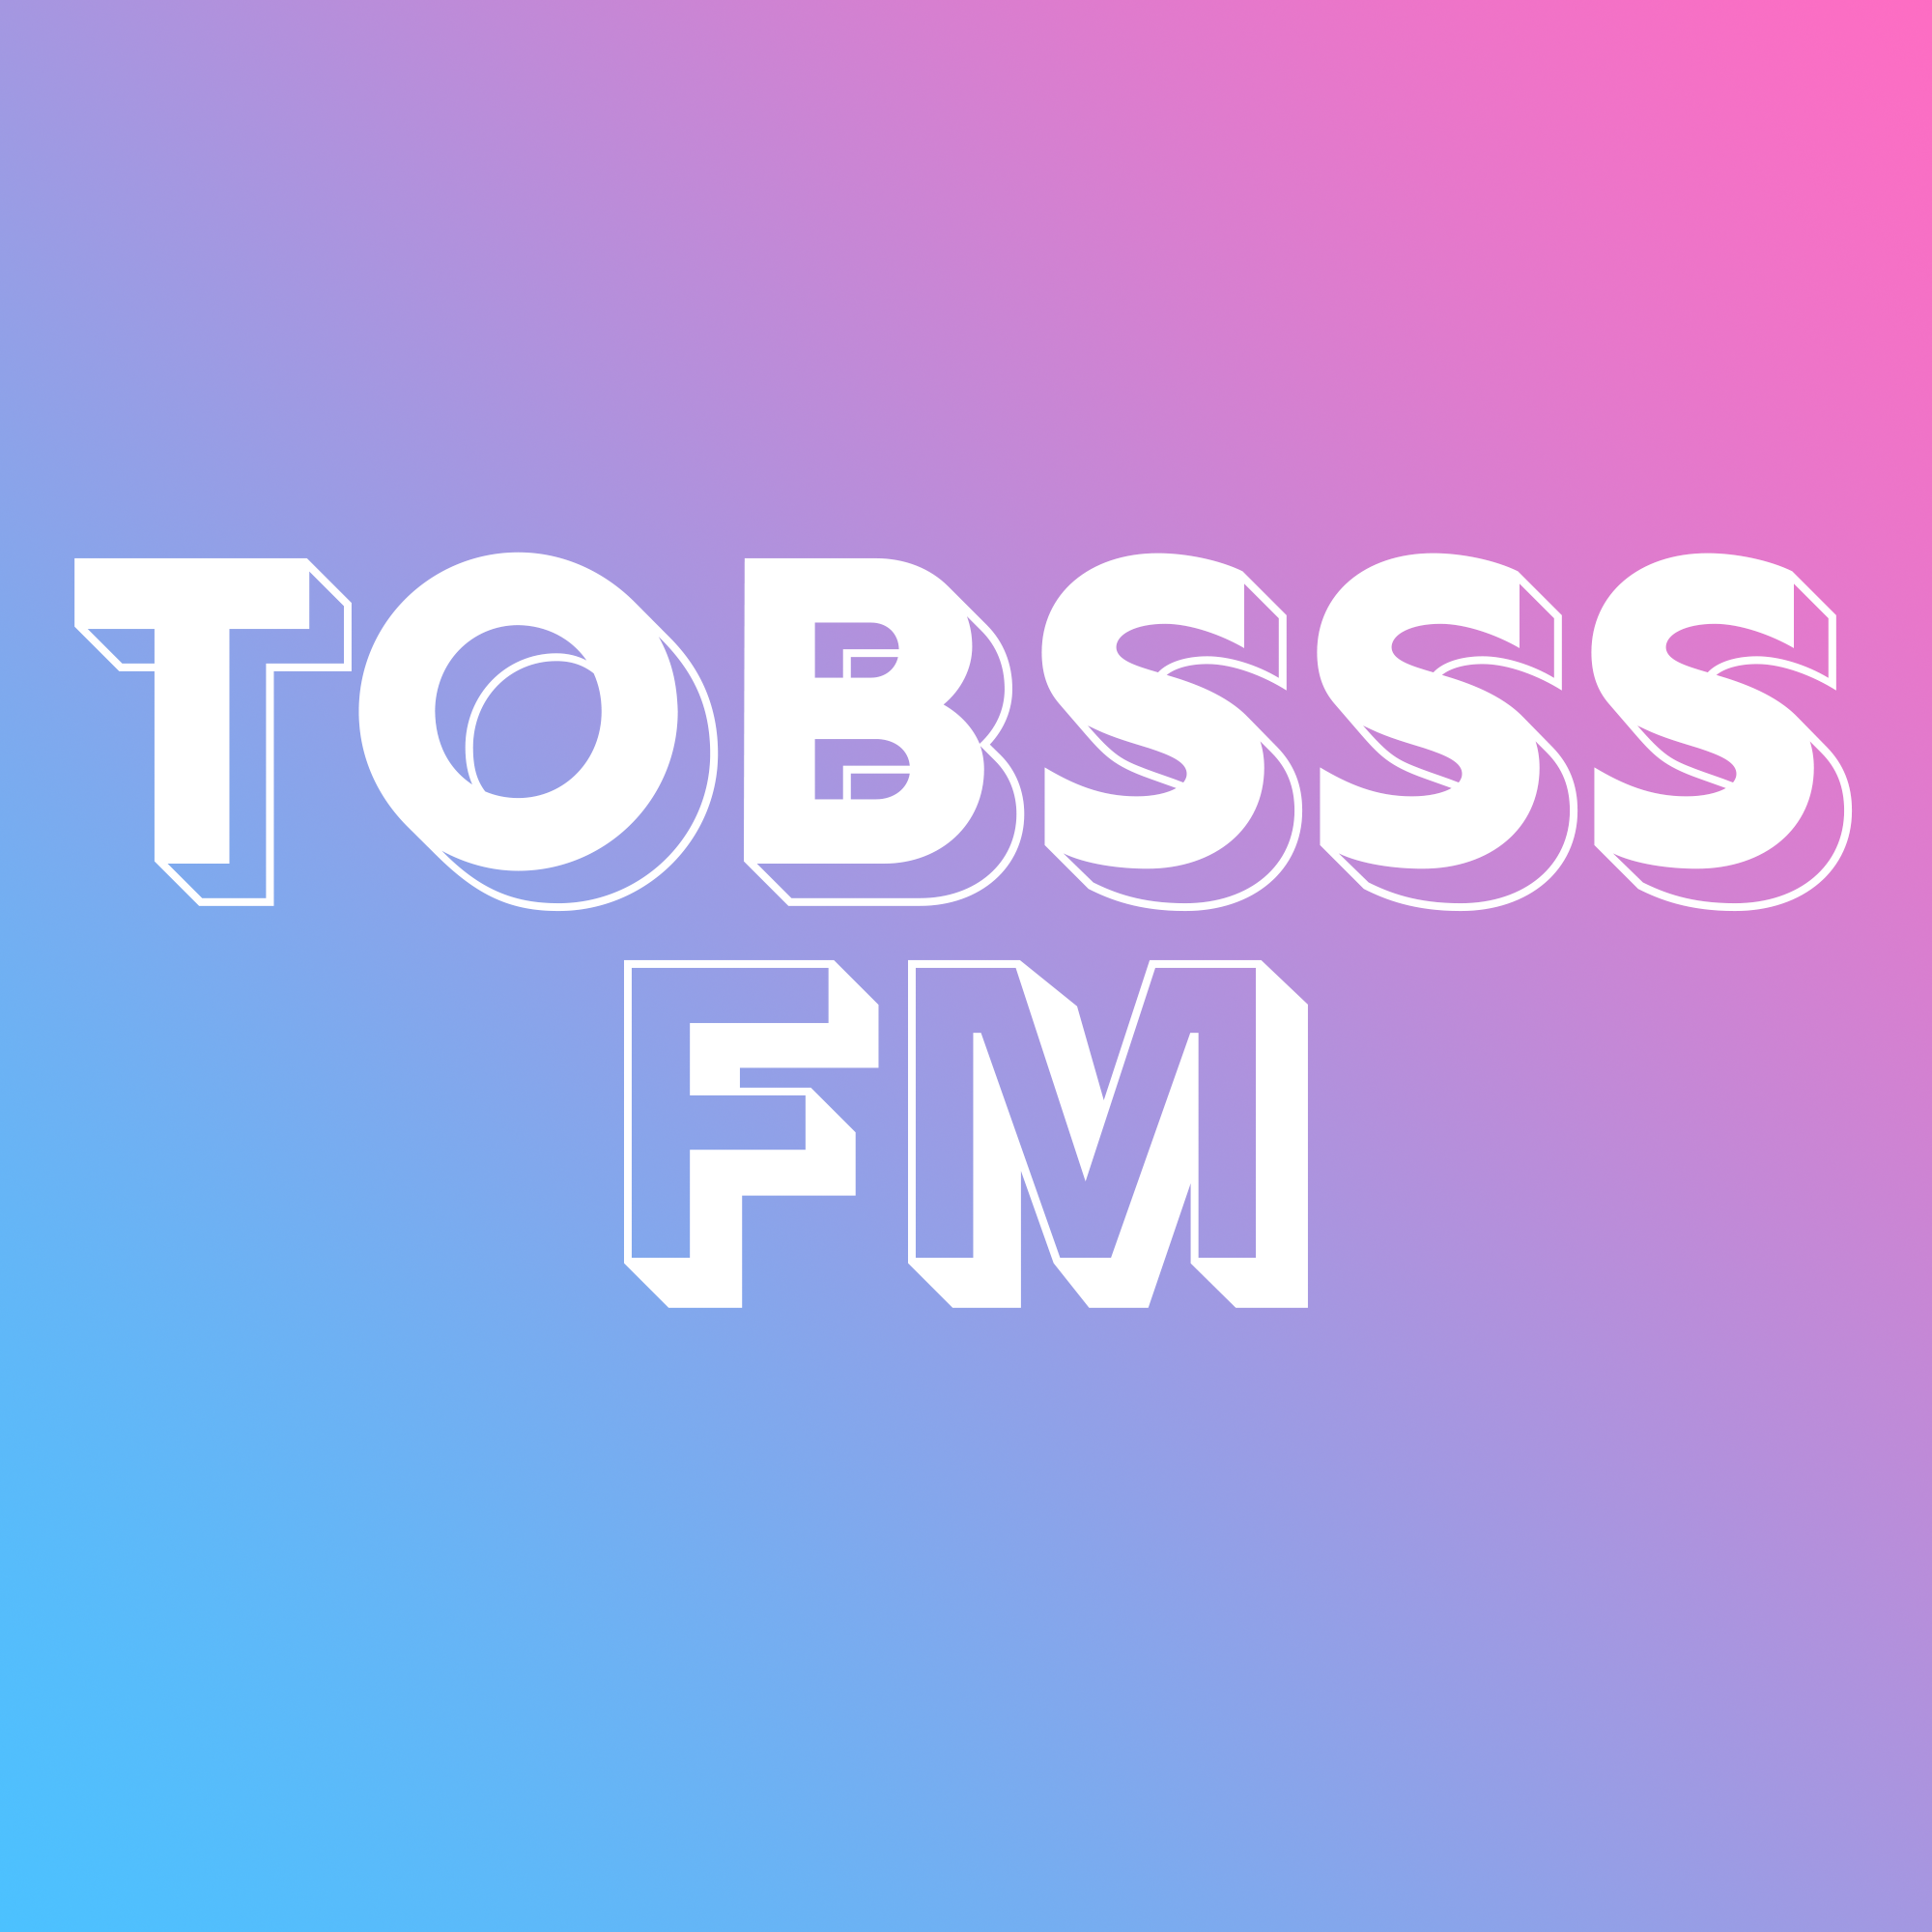 TobsssFM - Test